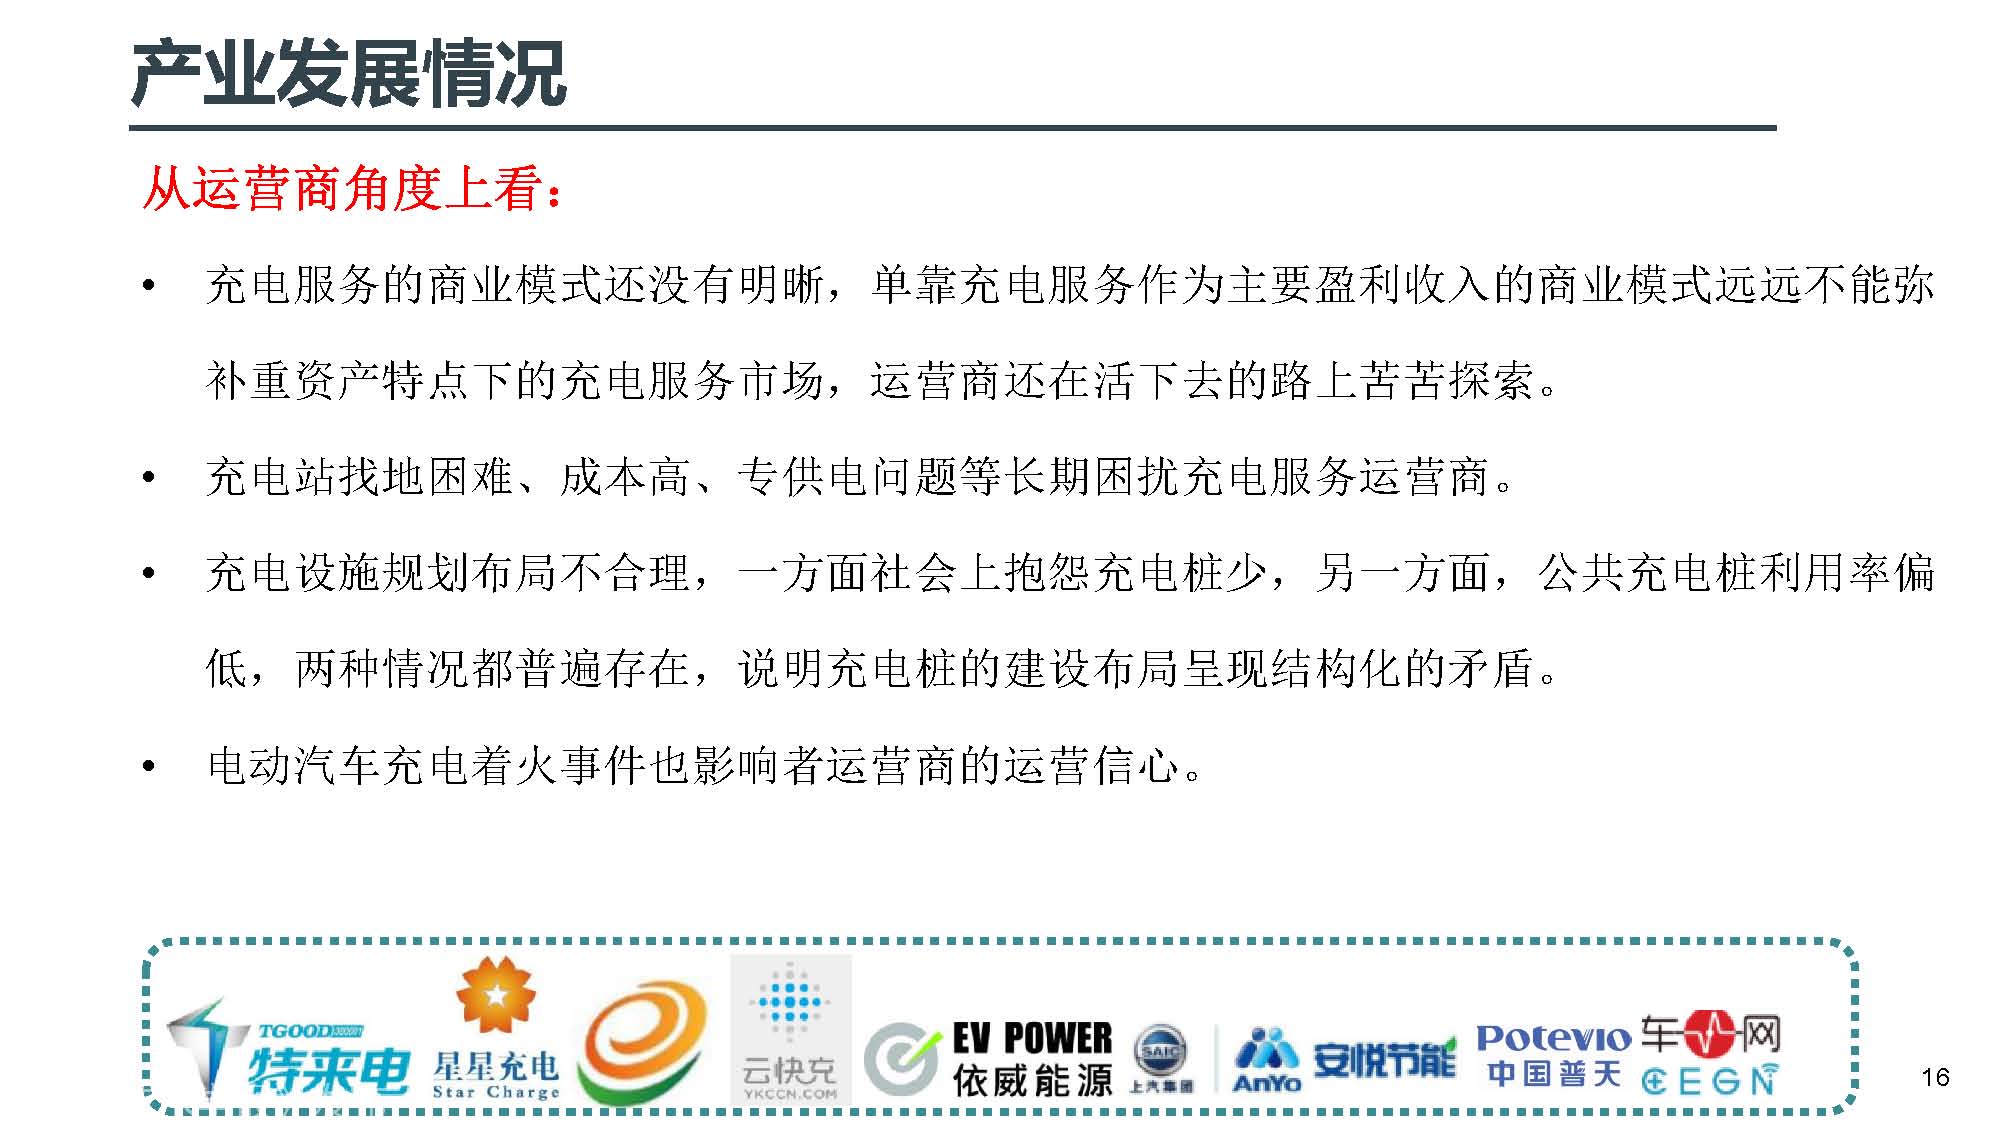 中电联标准化管理中心刘永东主任：电动汽车无线充电标准体系规划